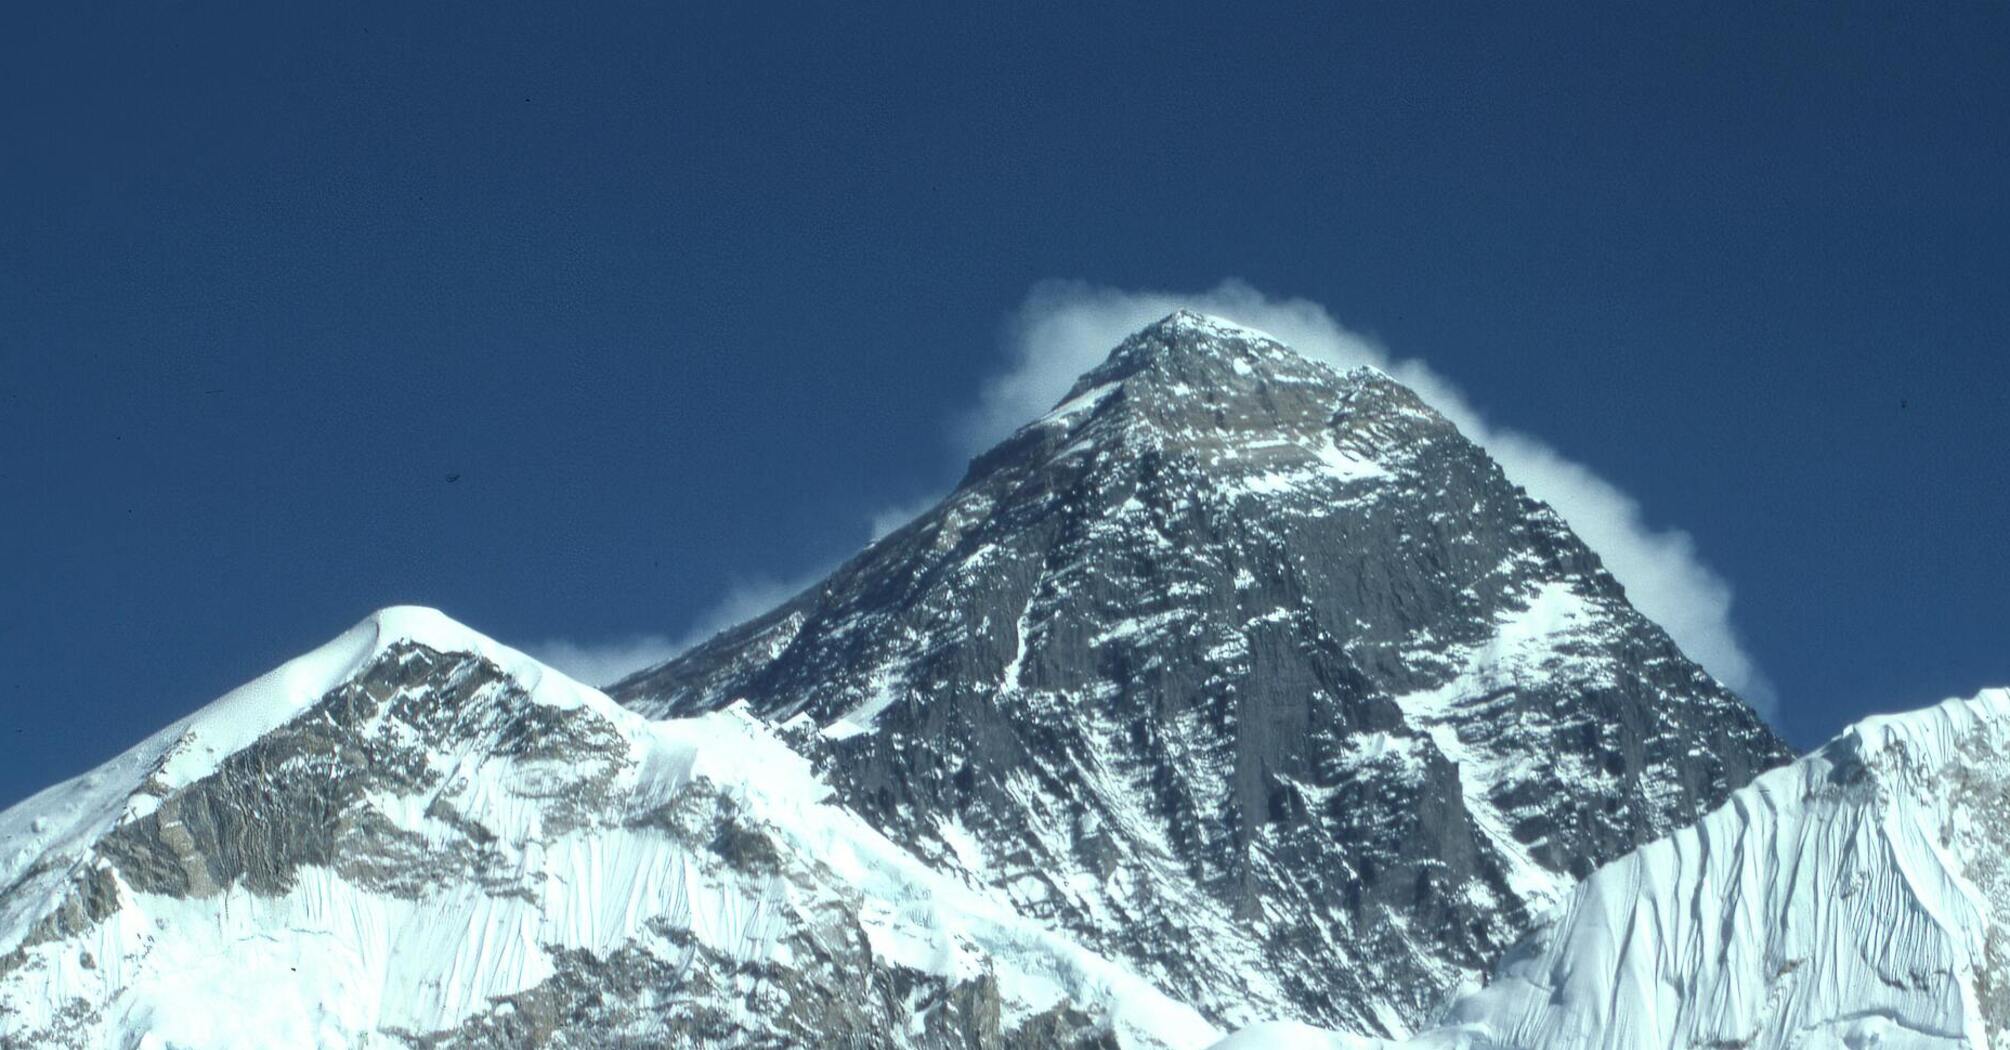 Окунитесь в удивительное величие Эвереста, К2, Канченджанги, Лхоцзе и Макала